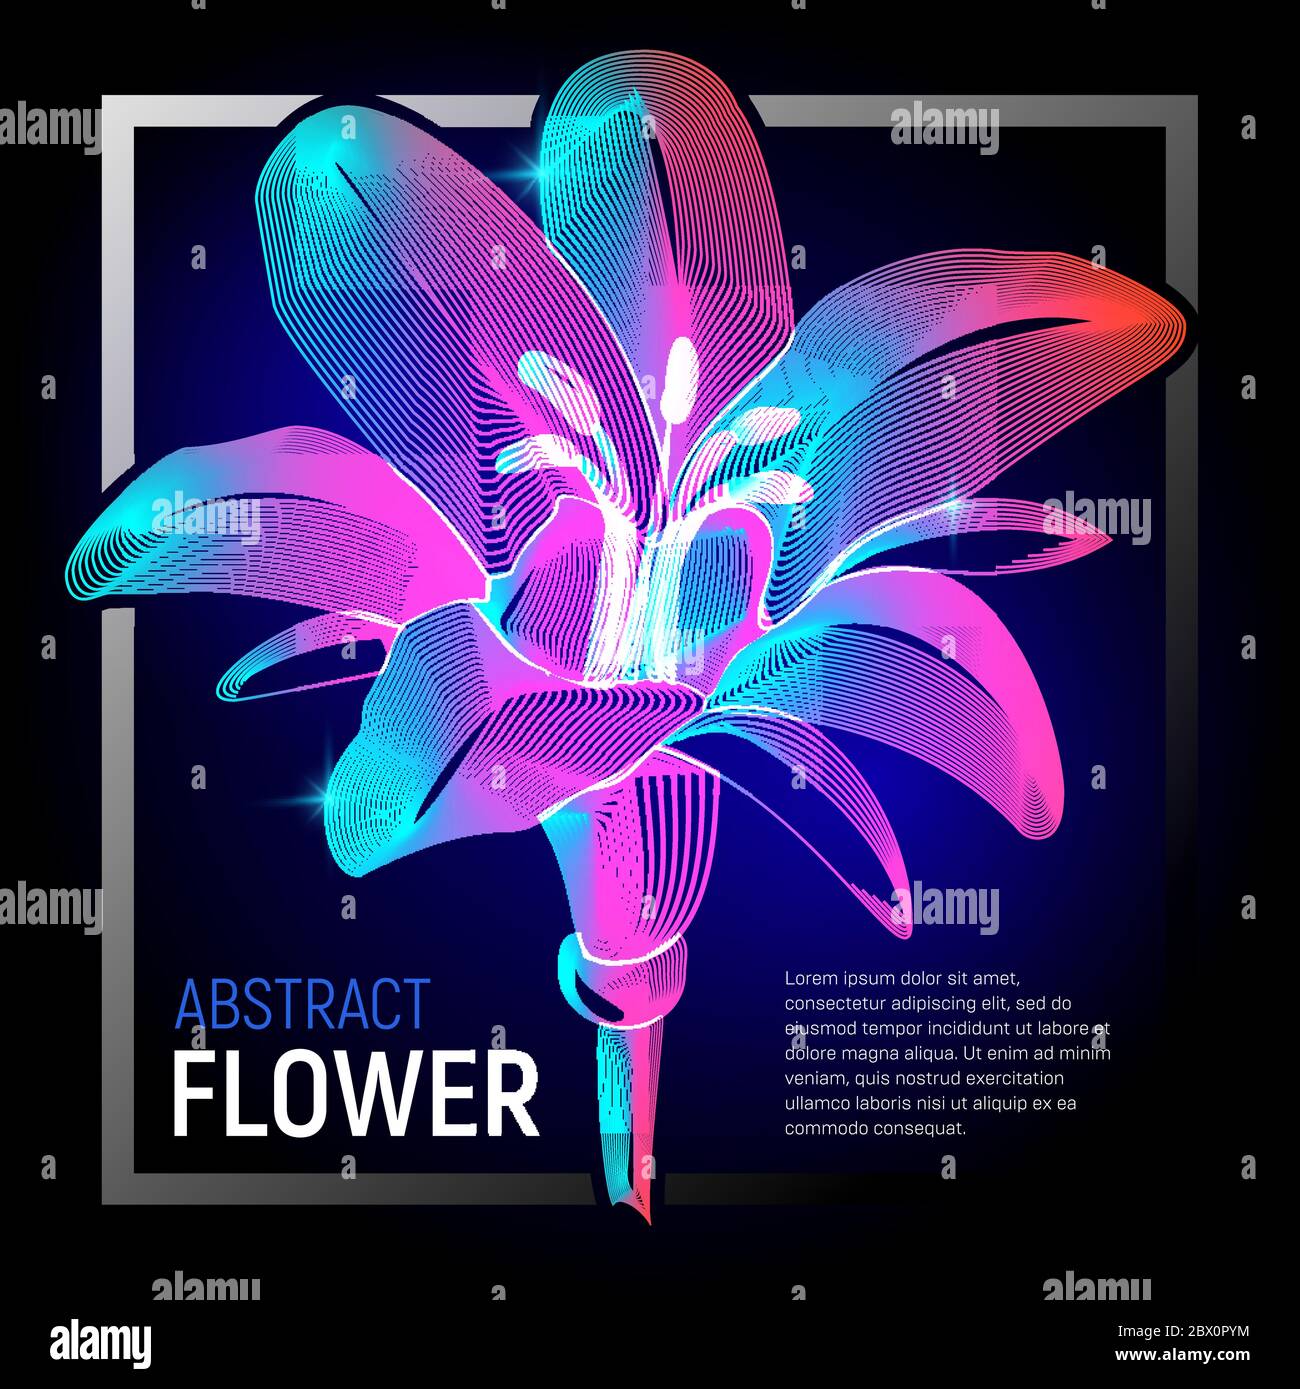 Vektor natürliche Blume oder dekorative Pflanze mit bunten abstrakten 3d-Formen Geometrie Linien Textur und Gradienten Wellen floral Vintage Art Blütenblatt Schönheit g Stock Vektor